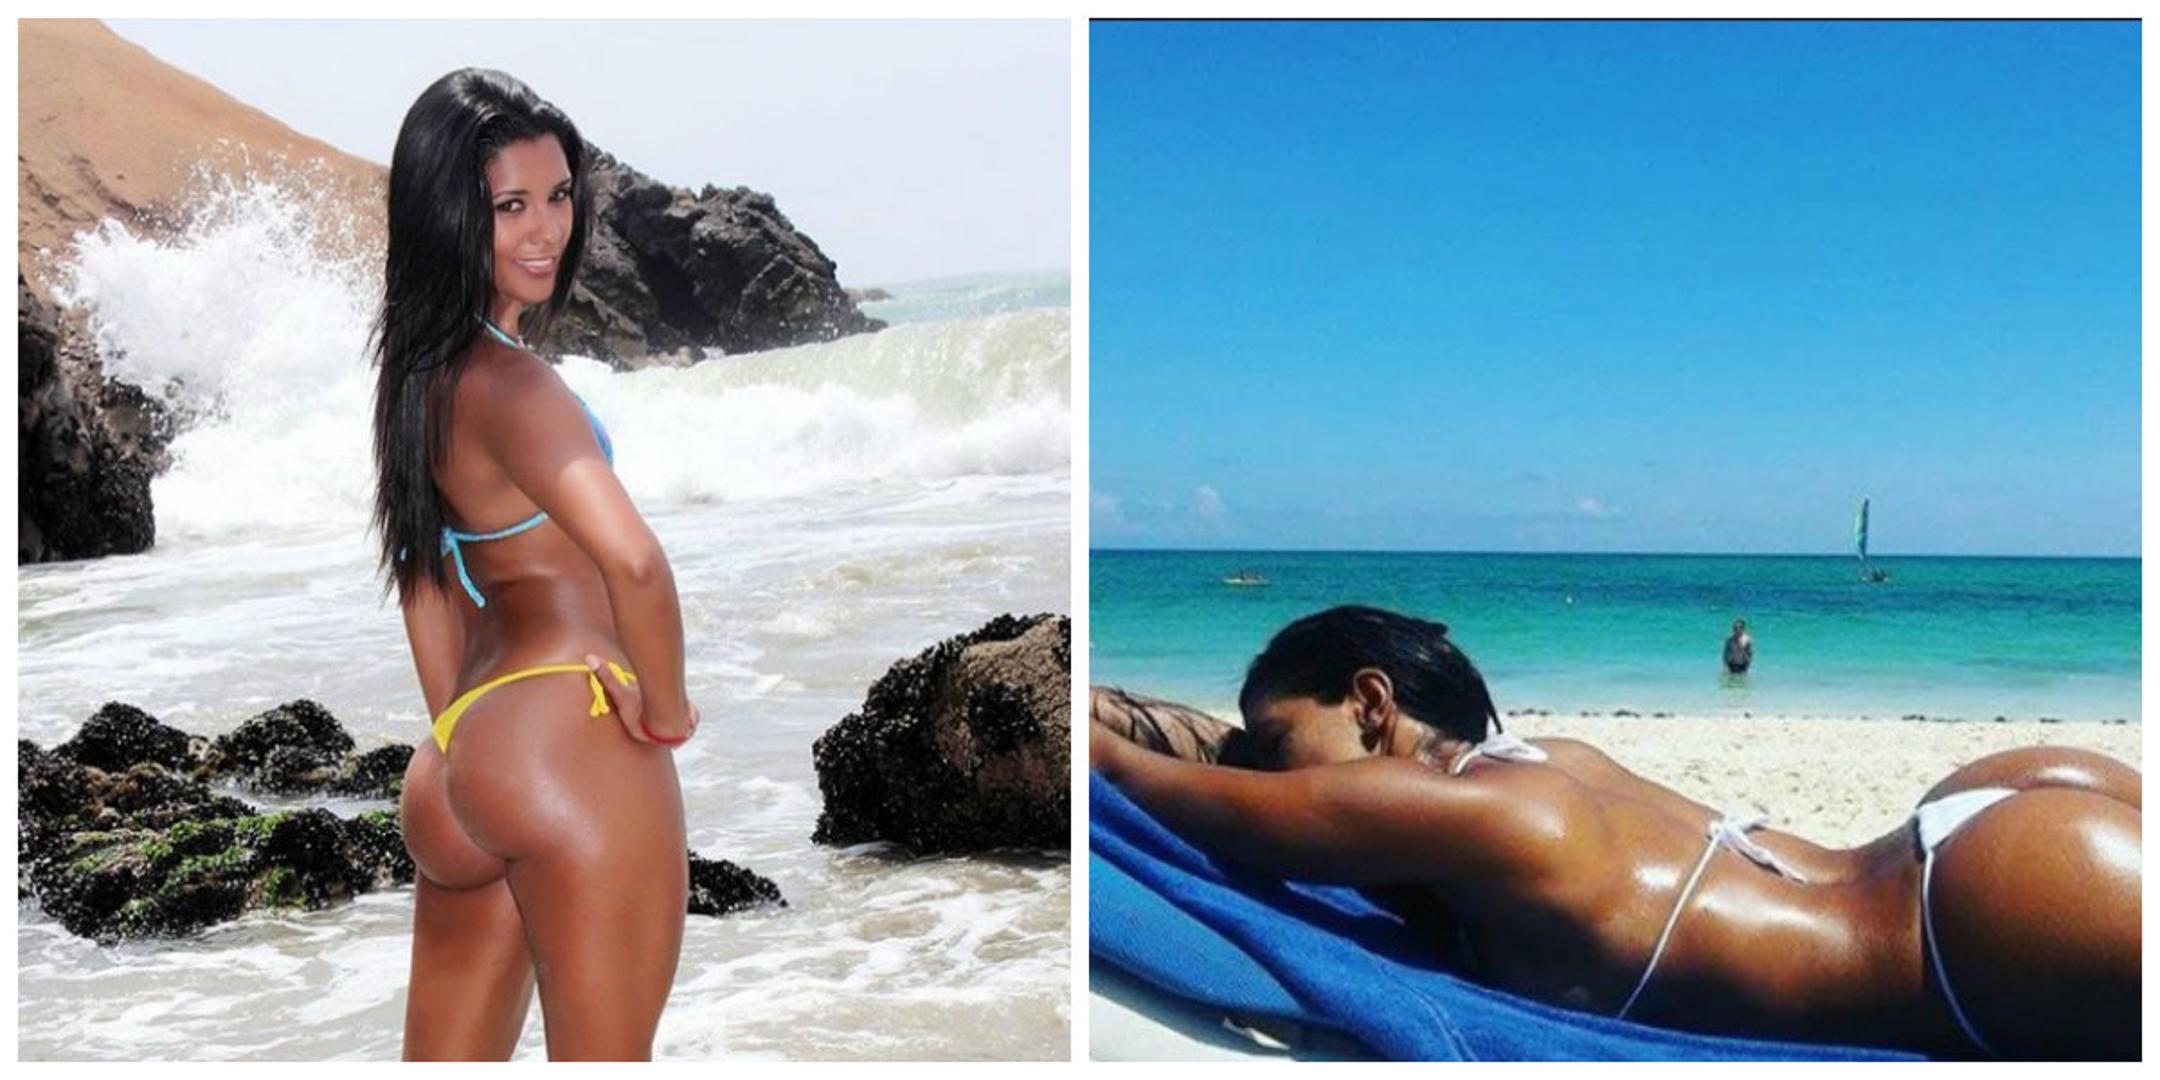 
Peruanska odbojkašica Rocio Miranda na naslovnice je svojevremeno došla zbog izjave 'da nije skandal što se želi slikati gola, kada ima sjajno tijelo'.